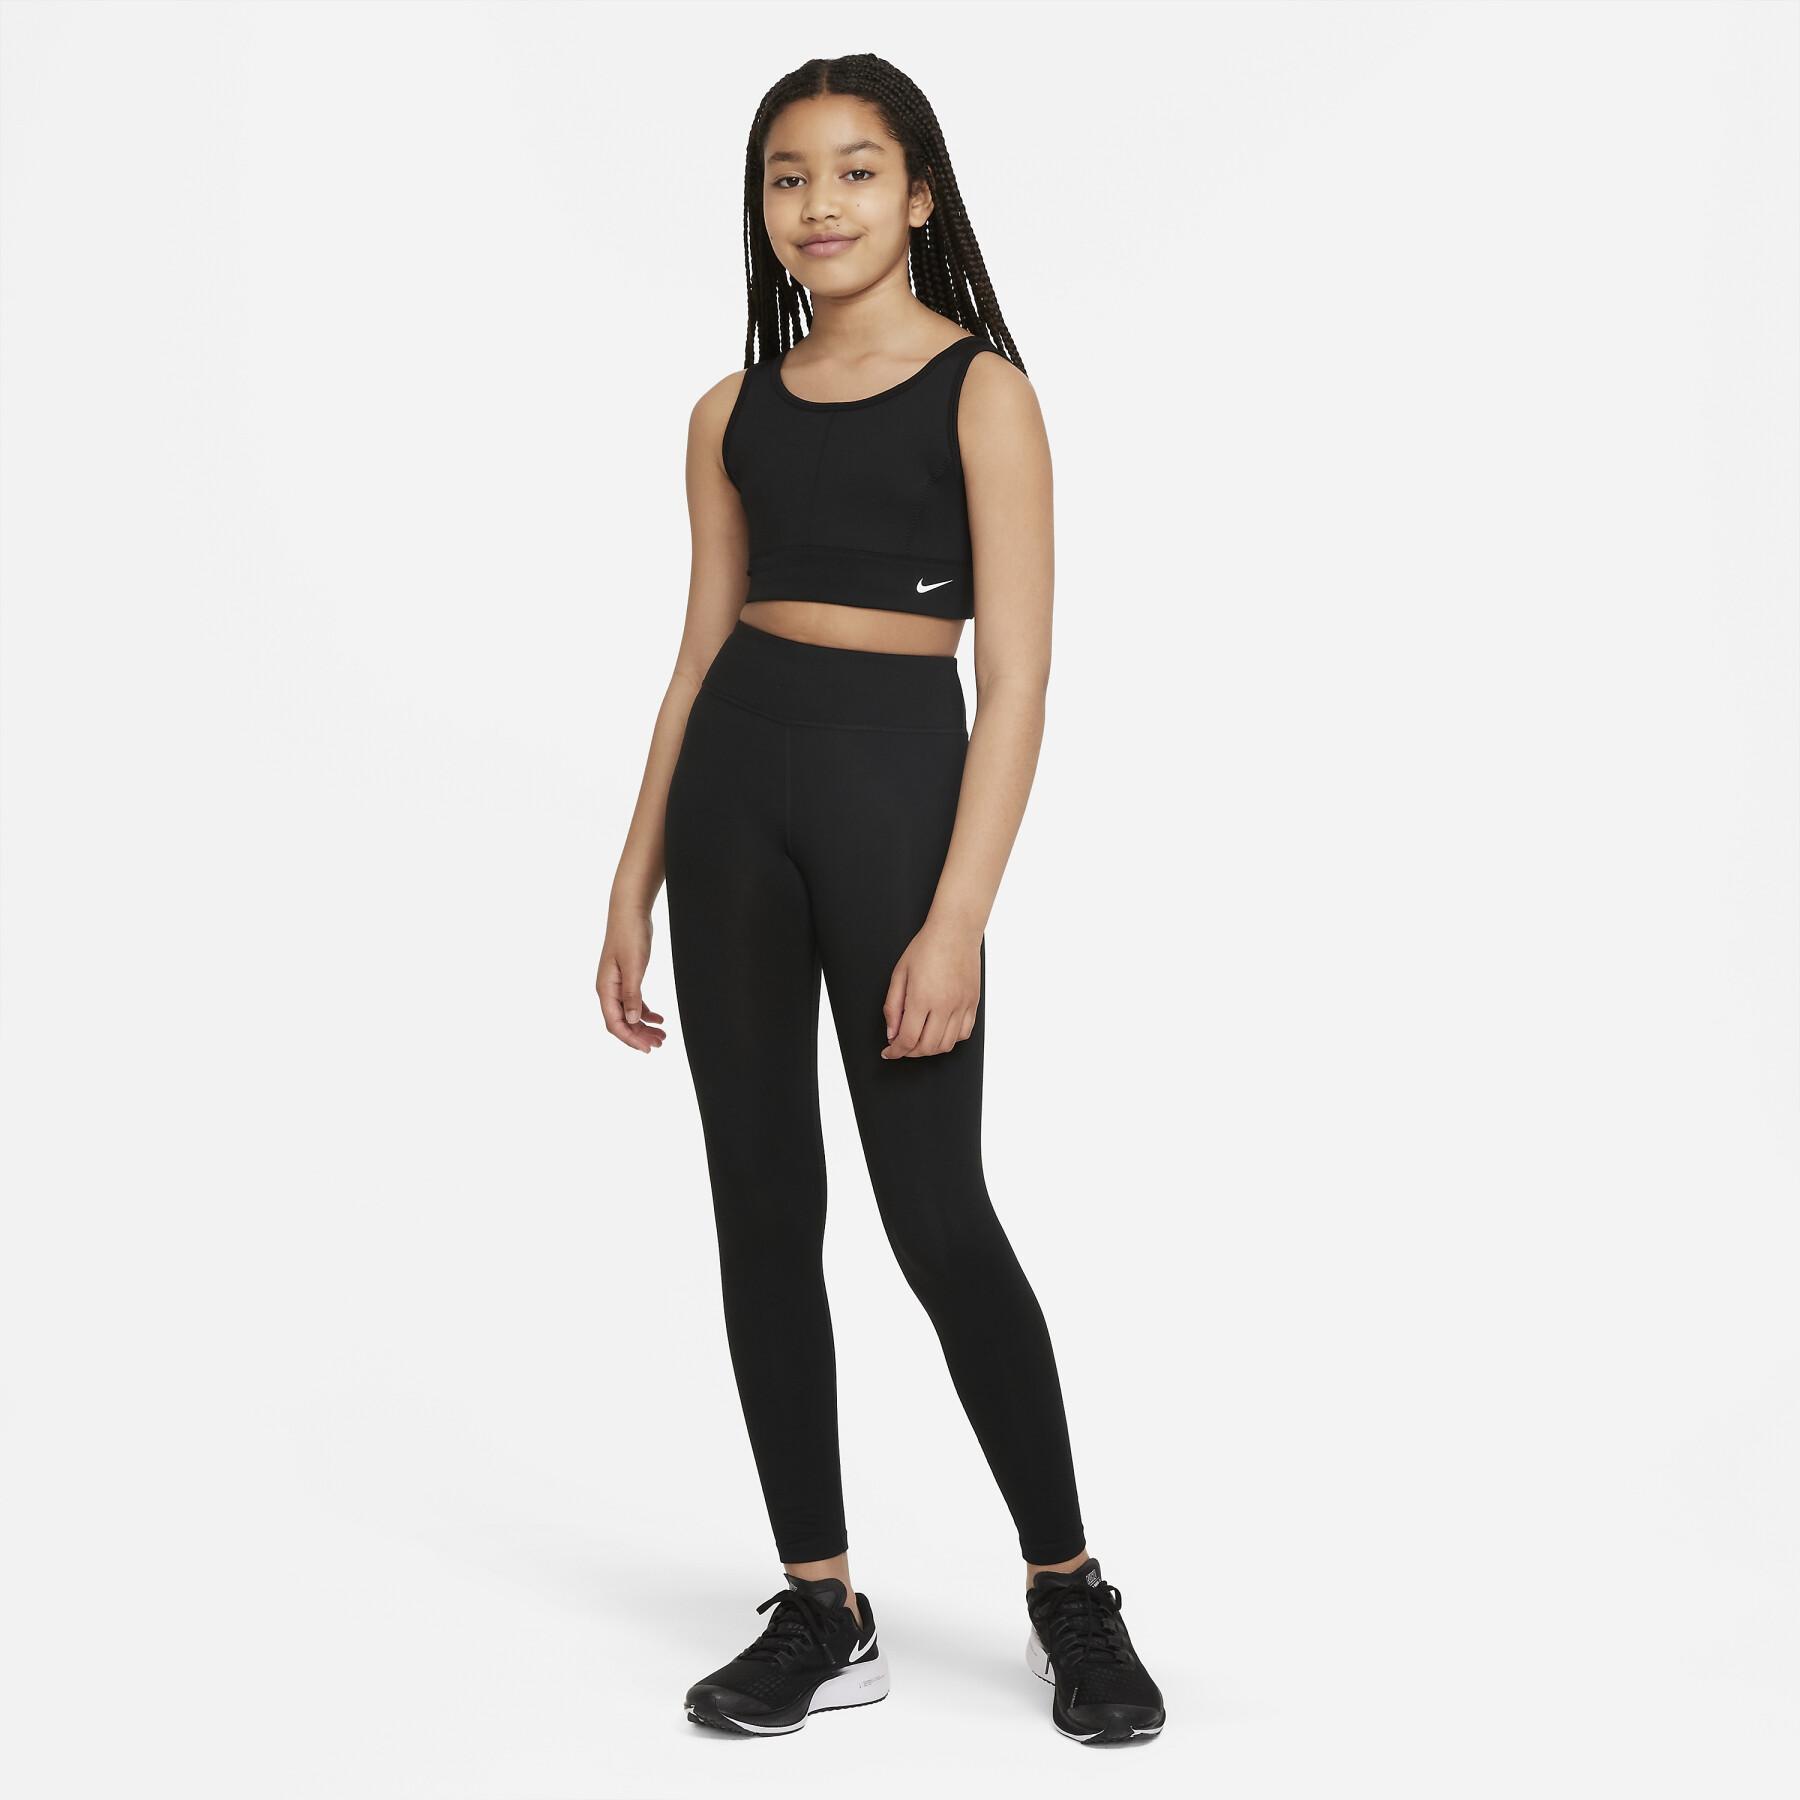 Girl's bra Nike Swoosh Luxe